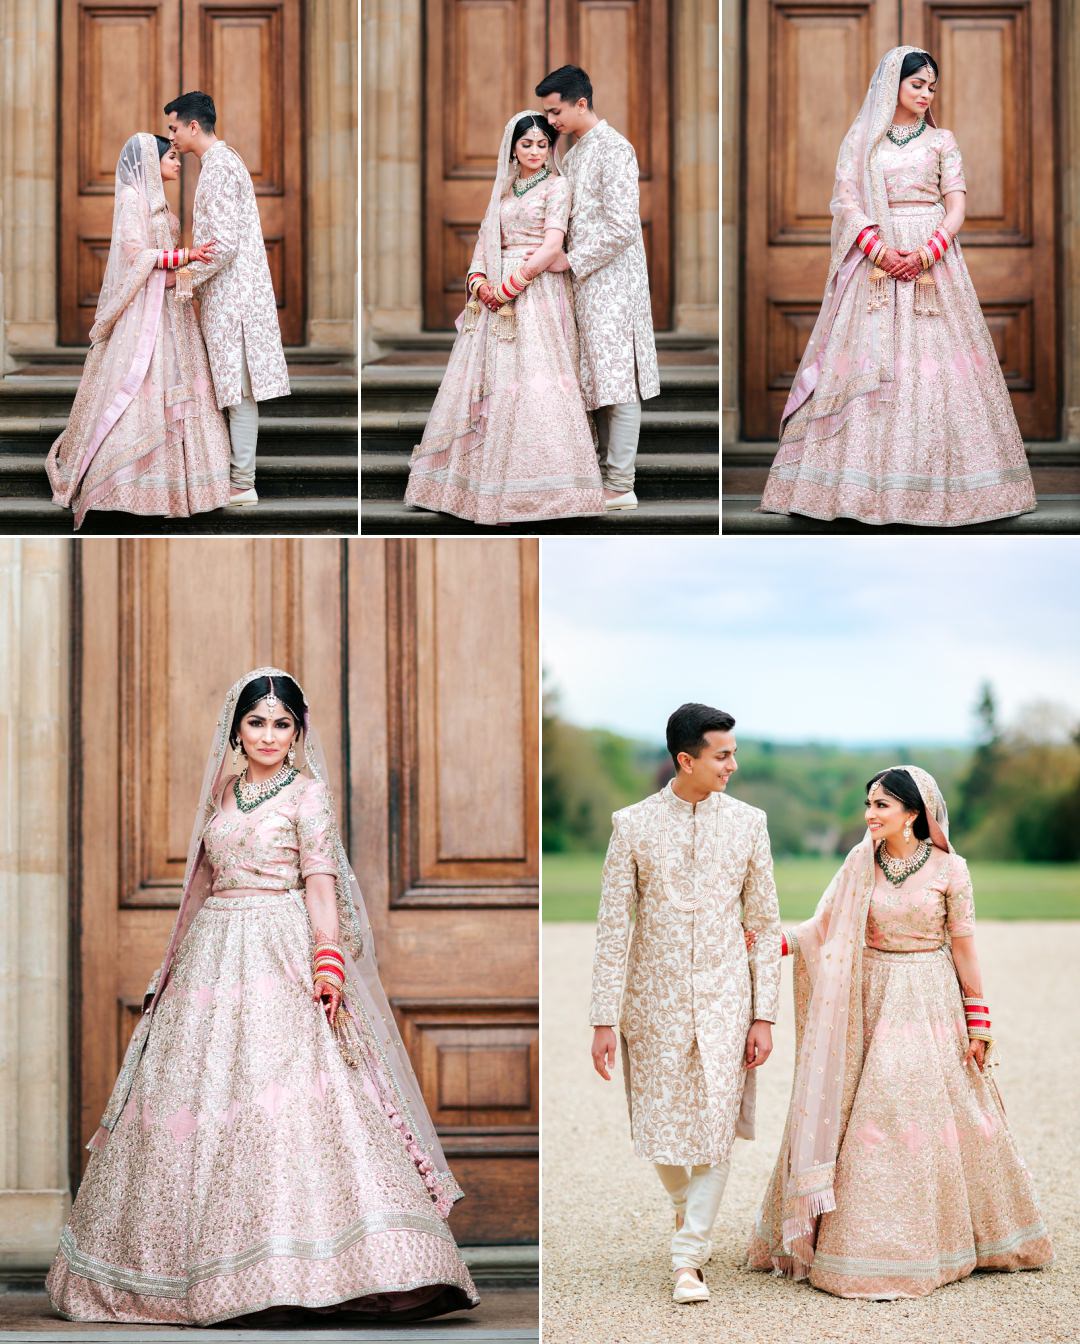 https://www.edpereira.com/wp-content/uploads/2020/06/Lovely-Heythrop-Park-Asian-Wedding-16.jpg